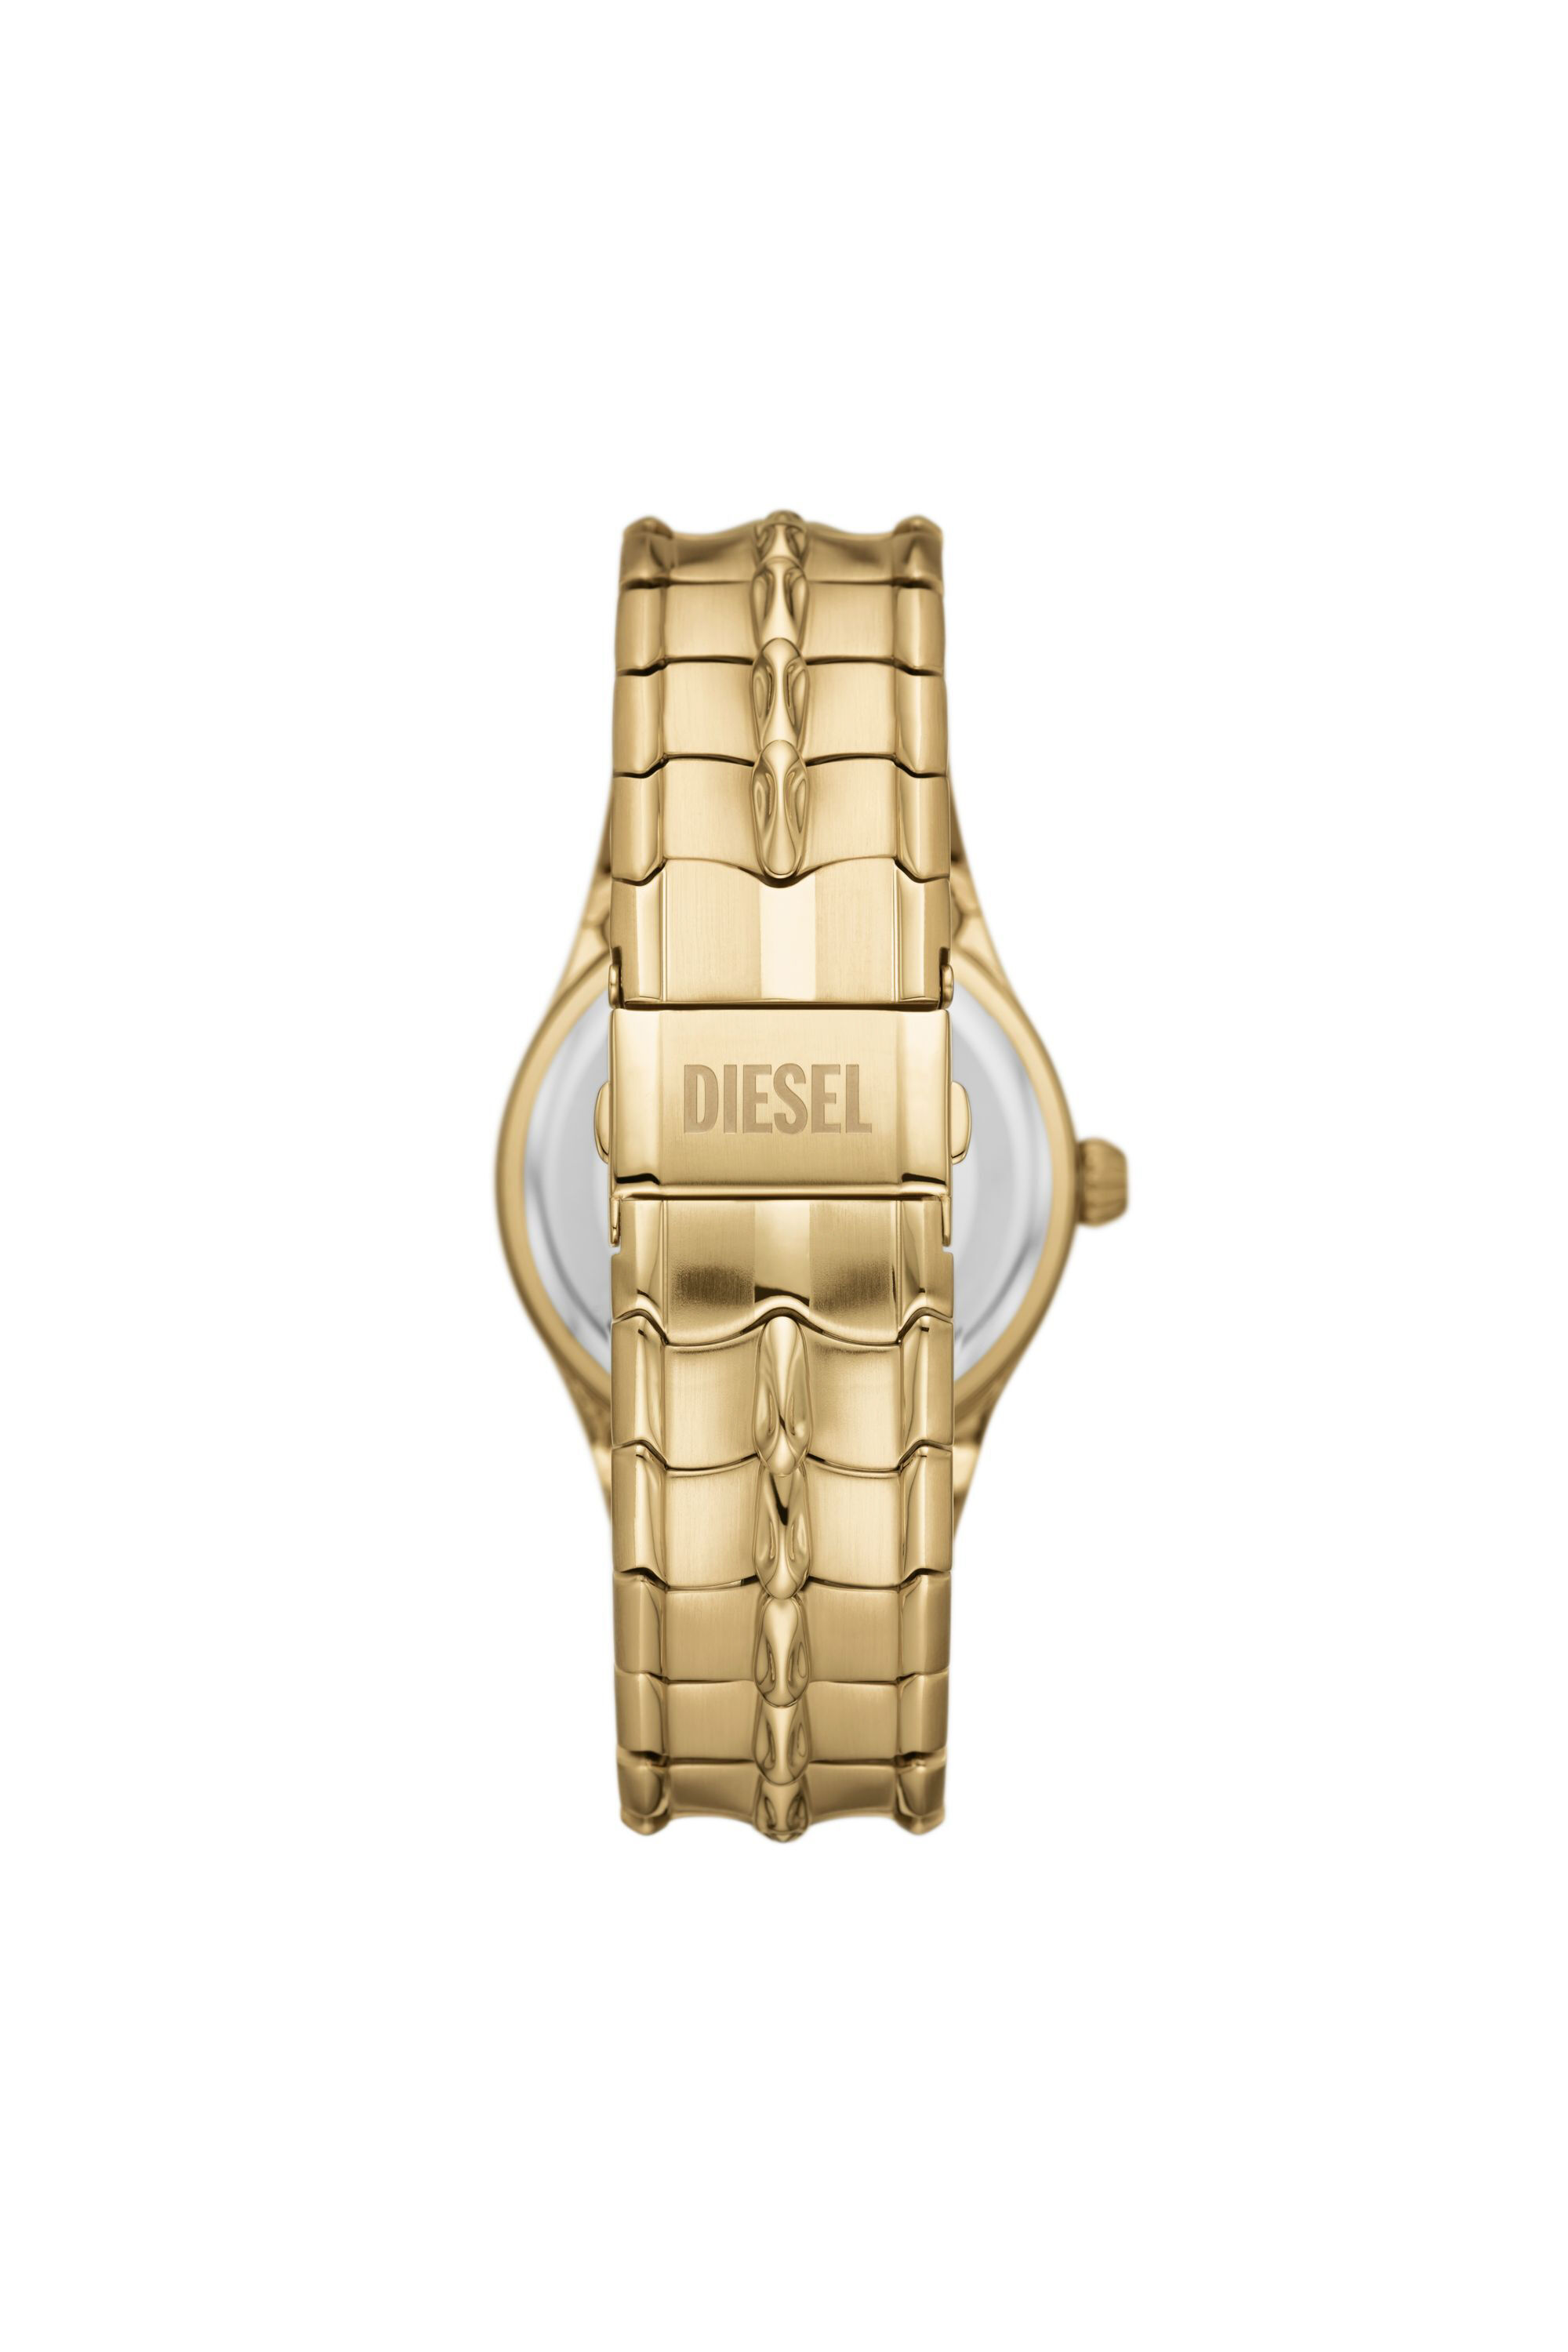 Diesel - DZ2186, Man Vert Three-Hand Date Gold-Tone Stainless Steel Watch in Oro - Image 2